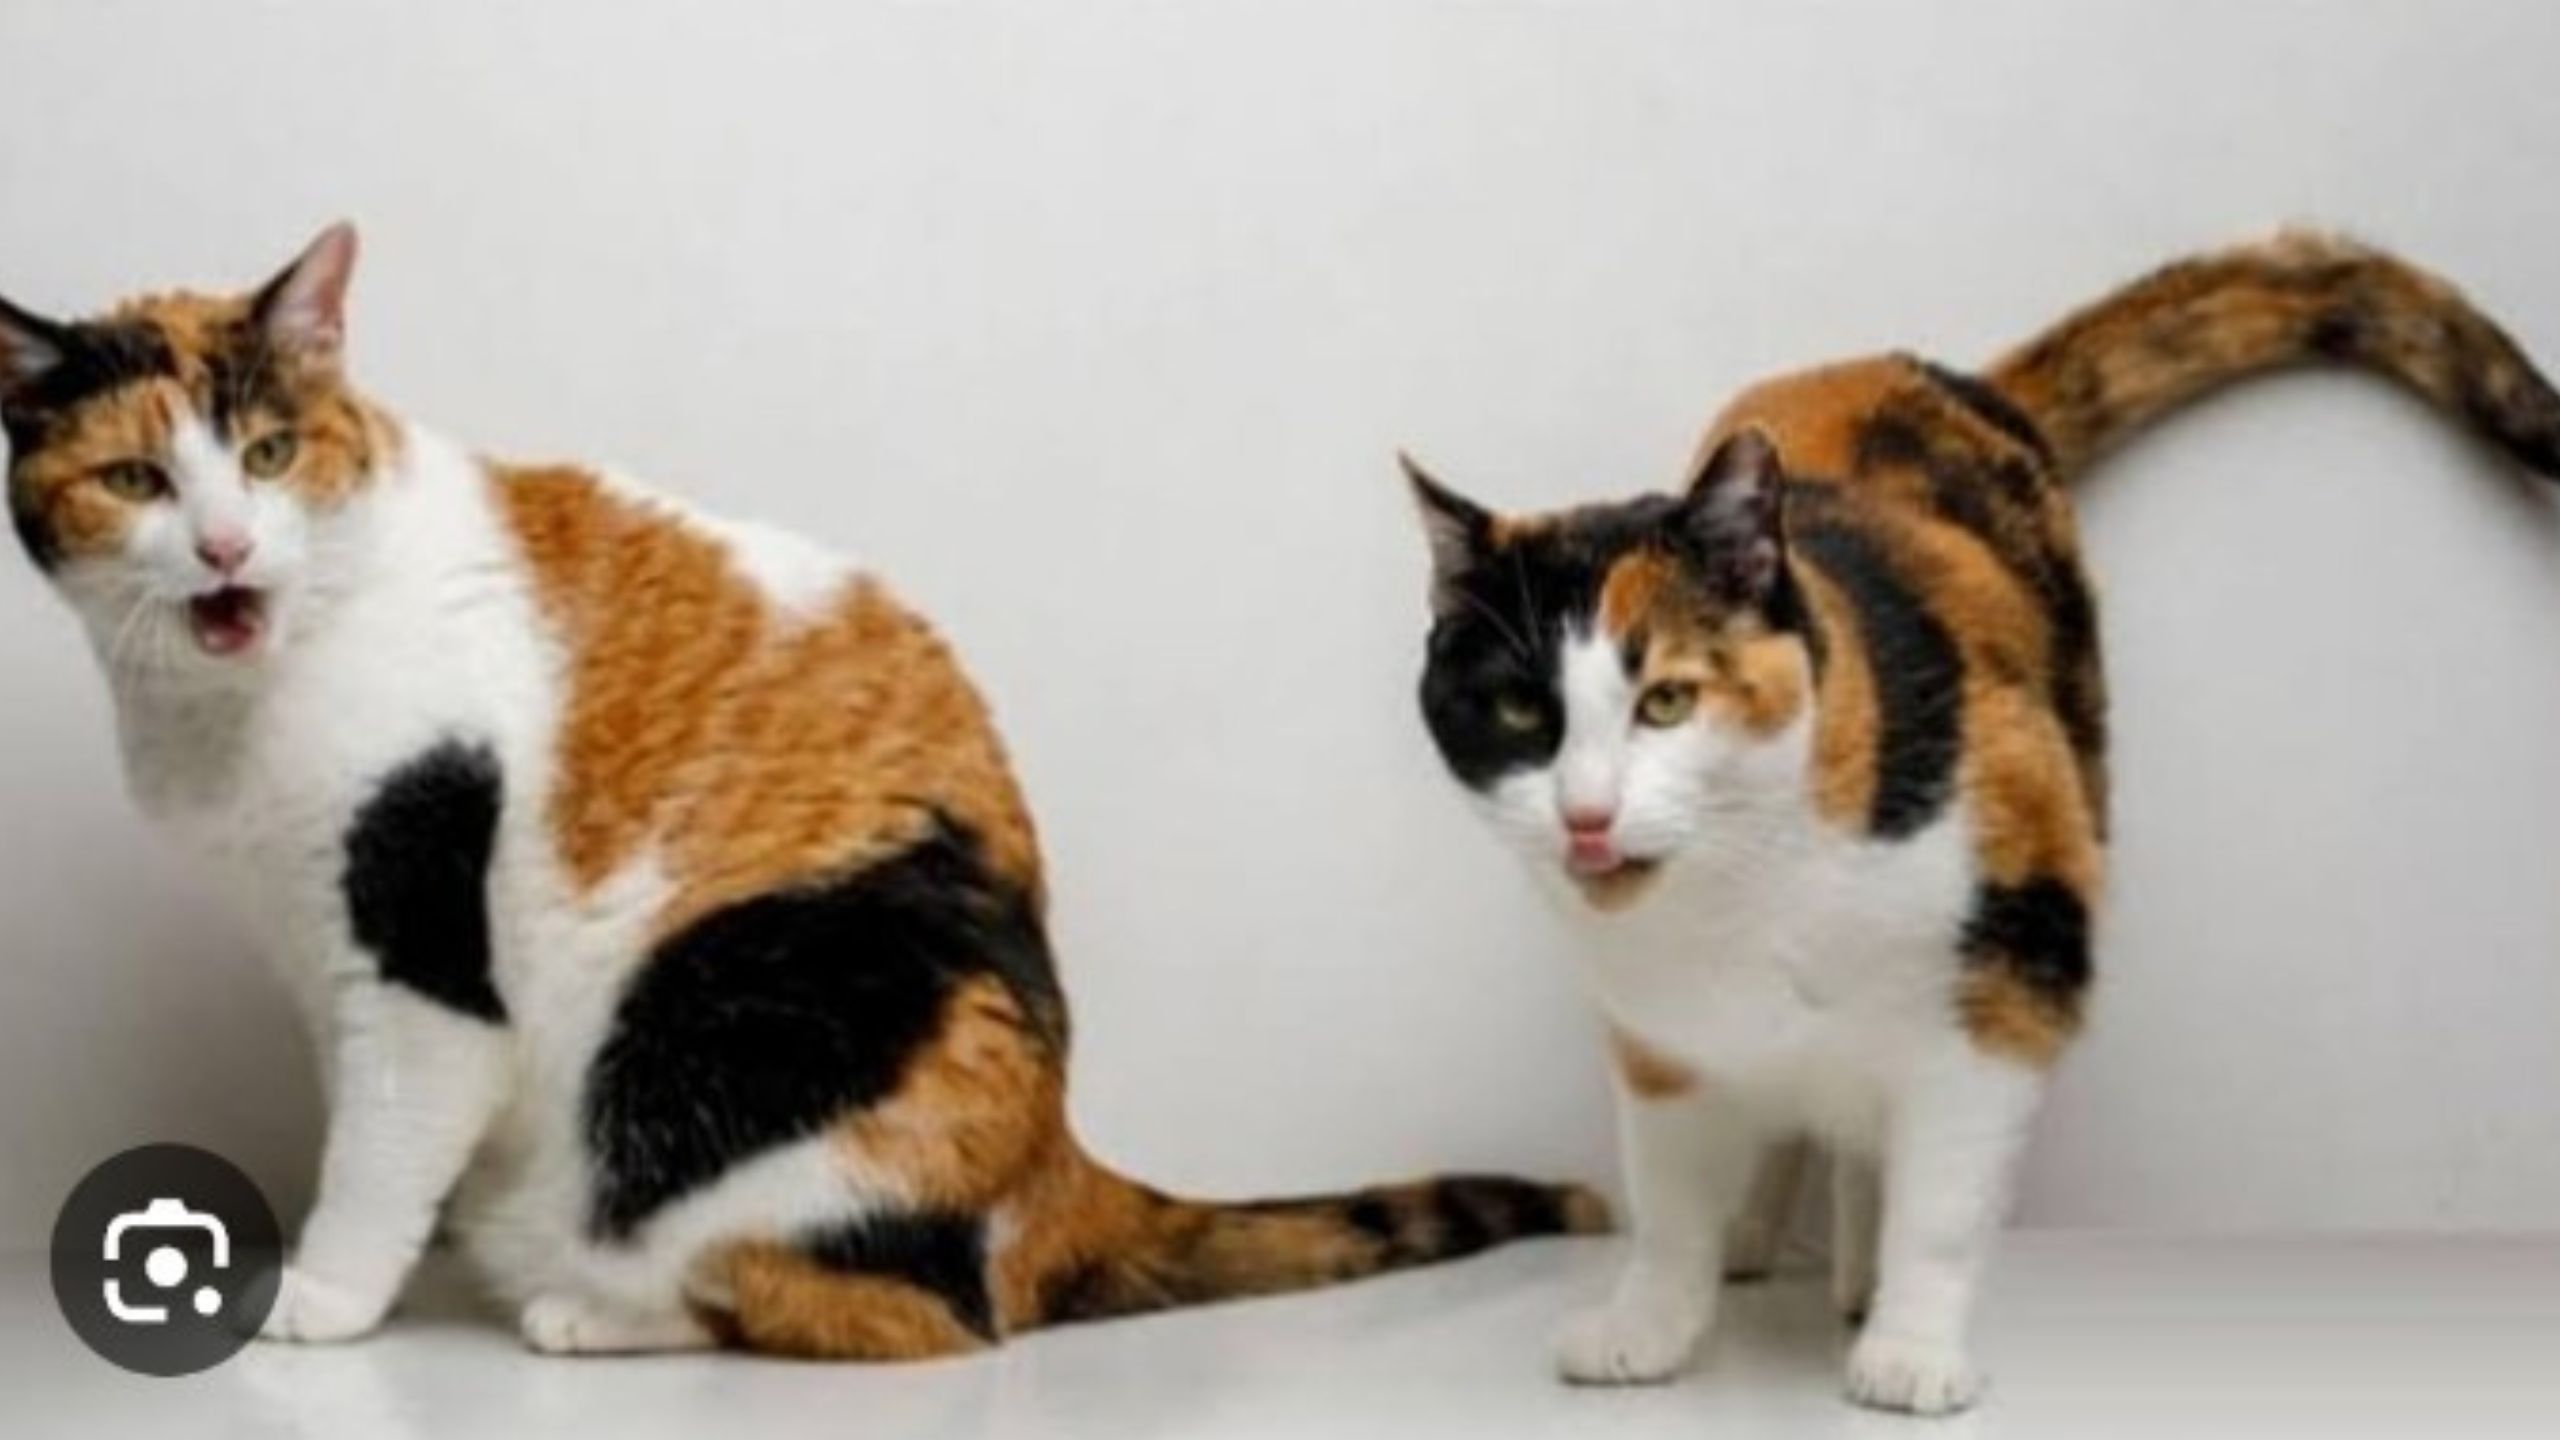 Penting! 10 Tips Merawat Kucing untuk Pemula, Ada Jadwal Cek Kesehatan Rutin